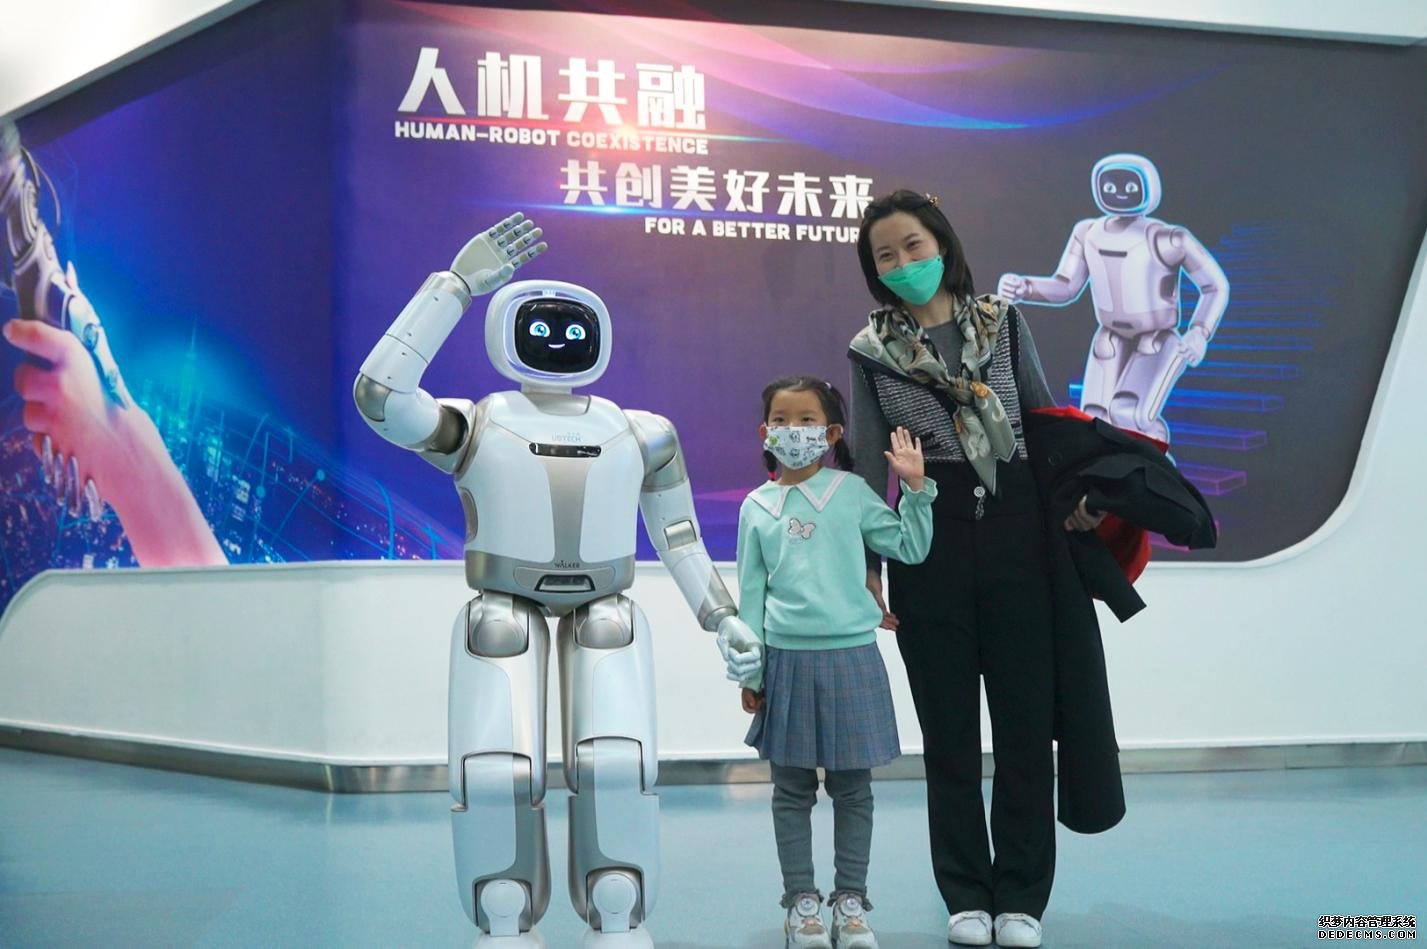 人形机器人进驻中科馆打造全国科技馆创新应用新模式